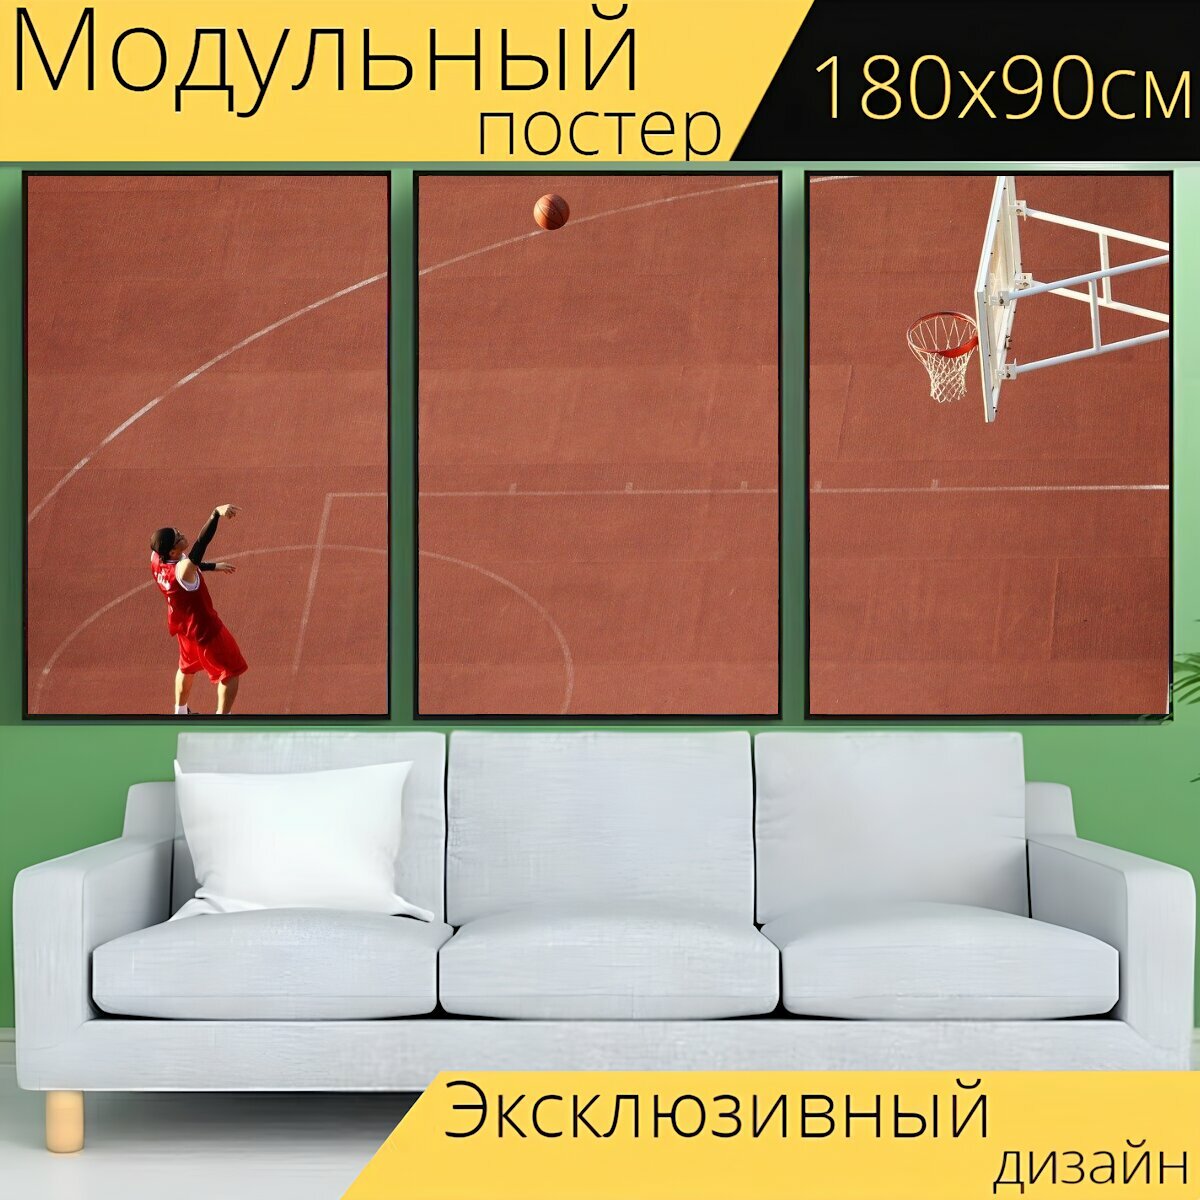 Модульный постер "Баскетбол, детская площадка, баскетбольные площадки" 180 x 90 см. для интерьера